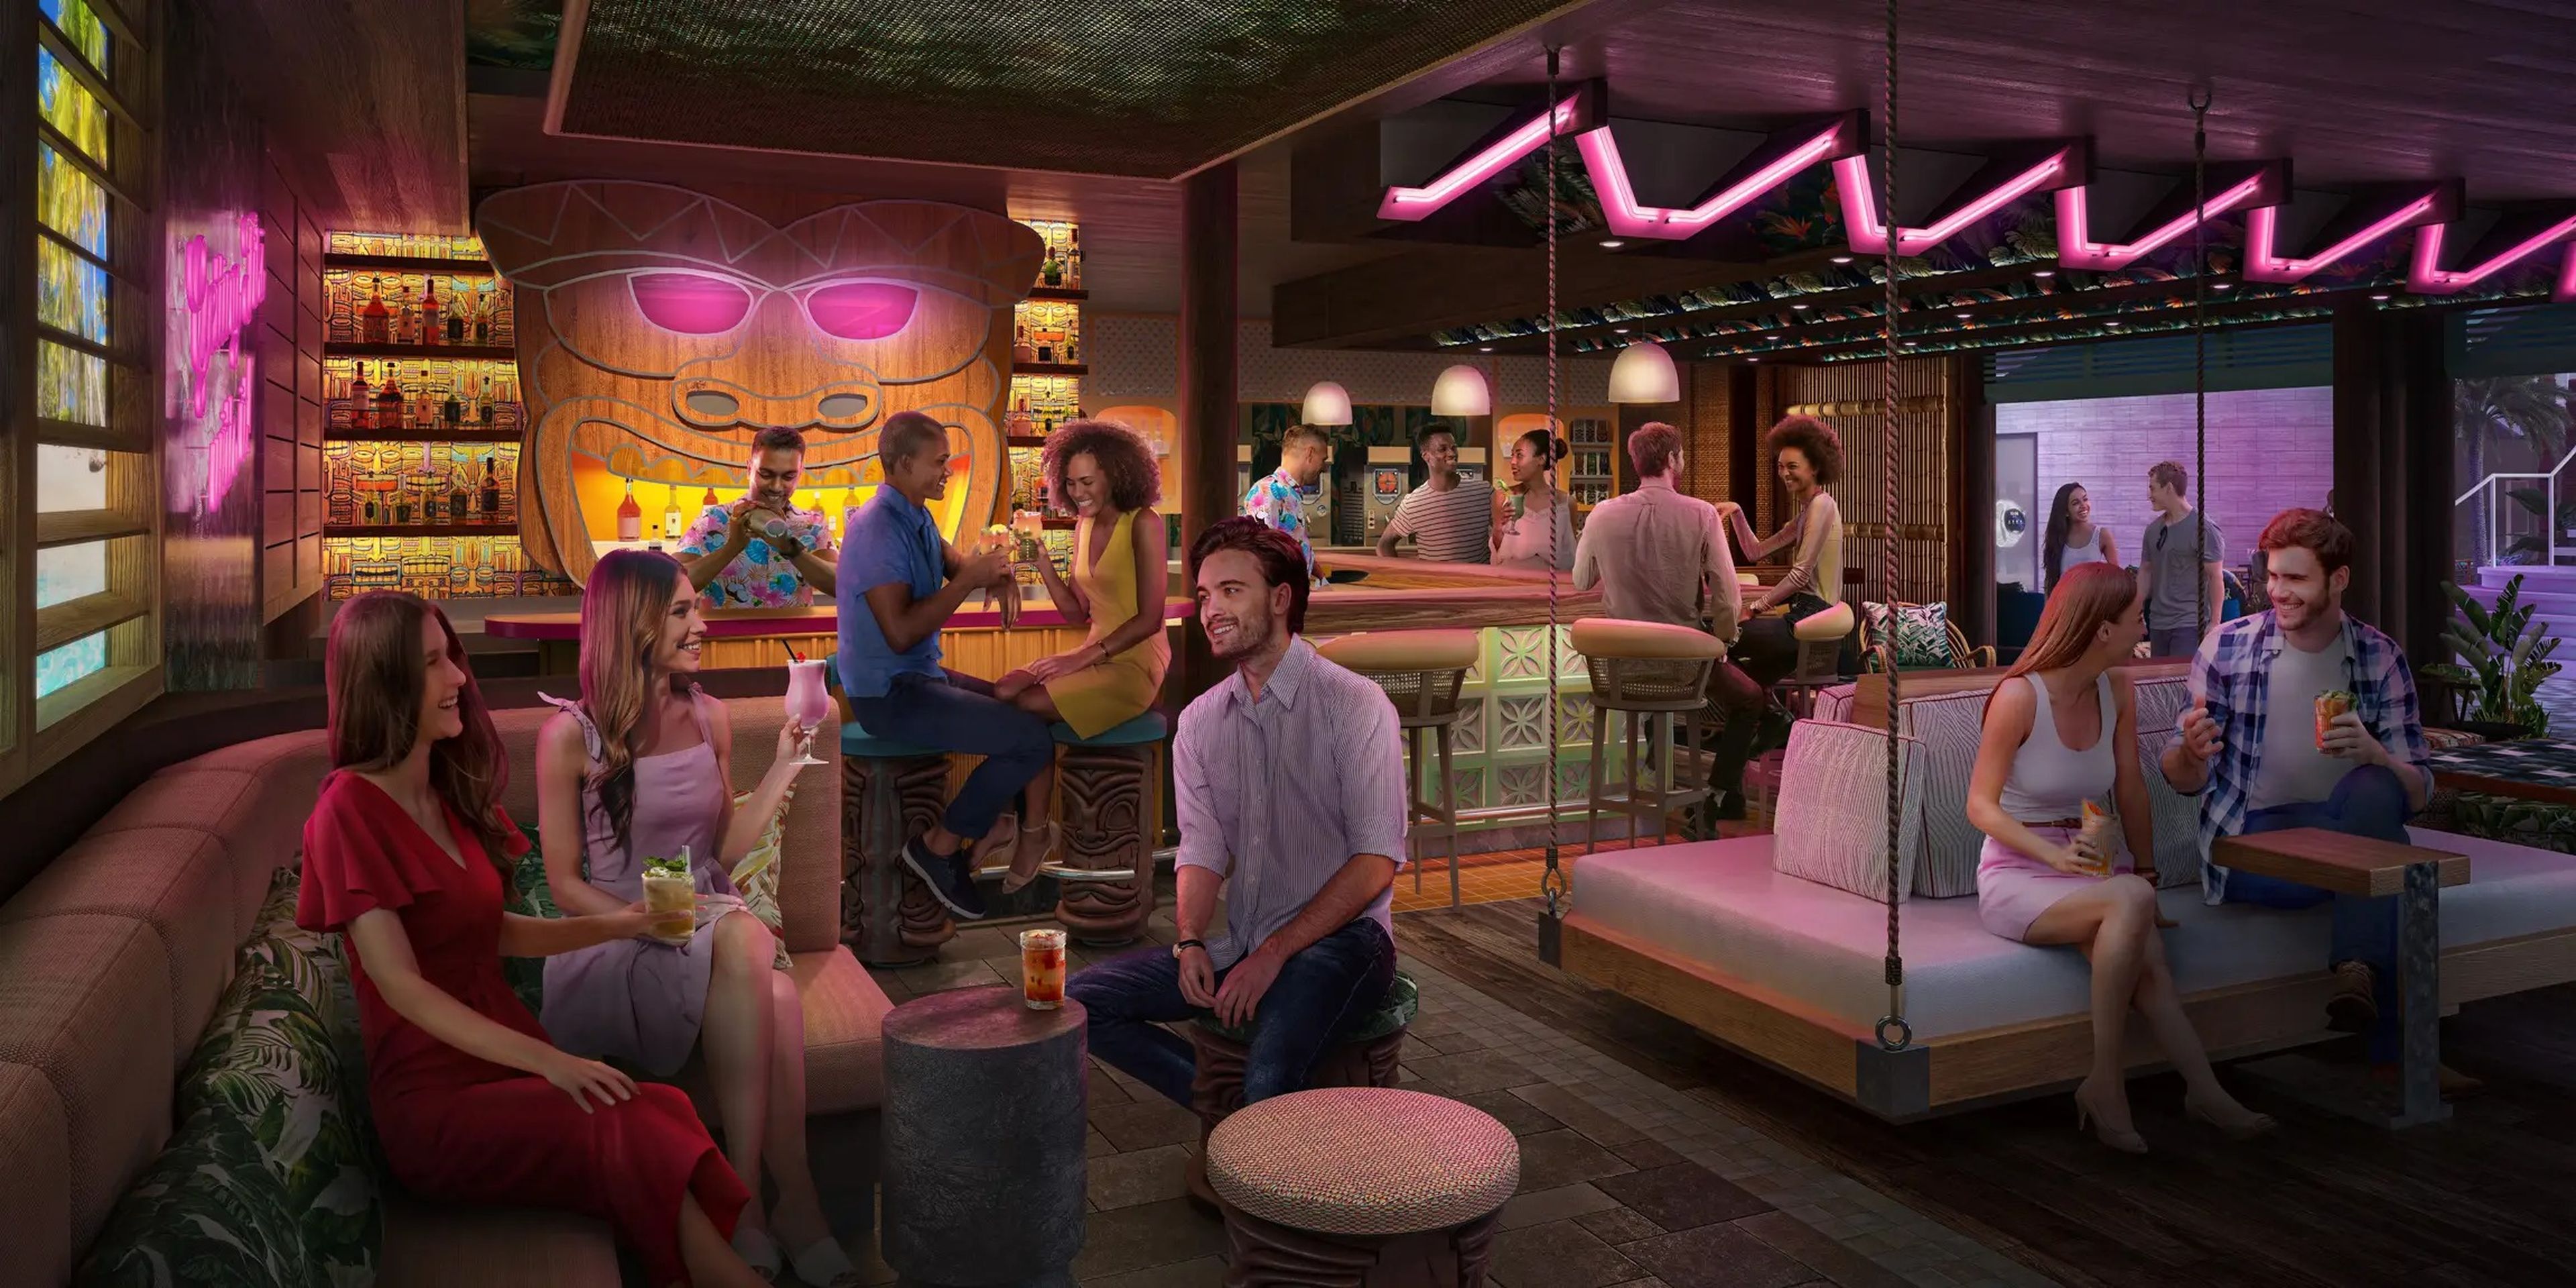 El nuevo bar Pesky Parrot servirá bebidas tropicales, como se muestra en la imagen.